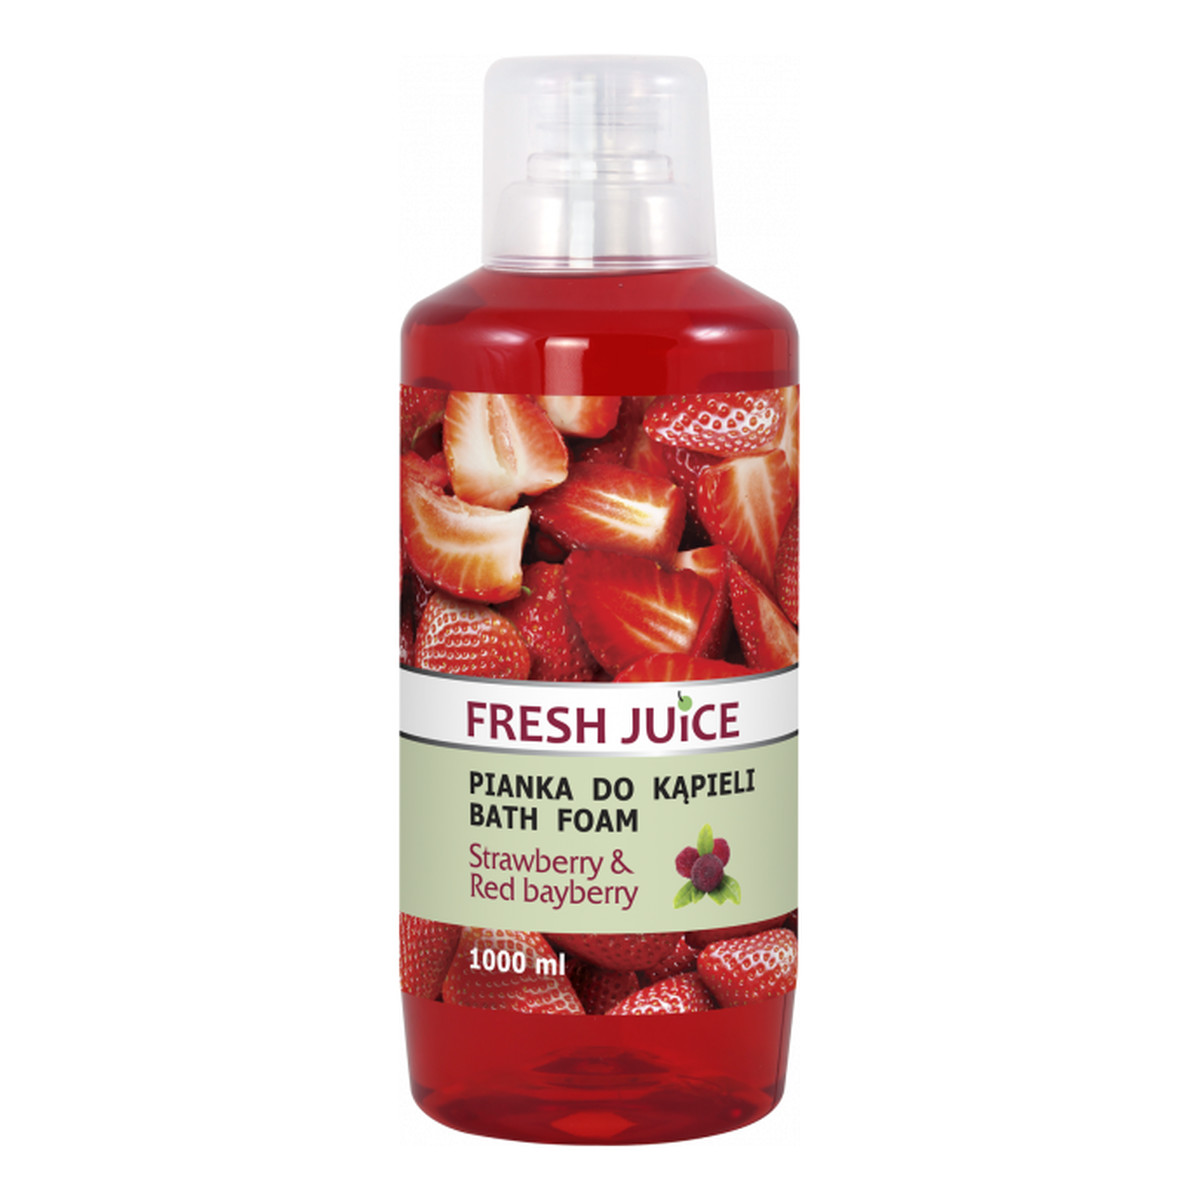 Fresh Juice Pianka do kąpieli Truskawka & Red Bayberry 1000ml